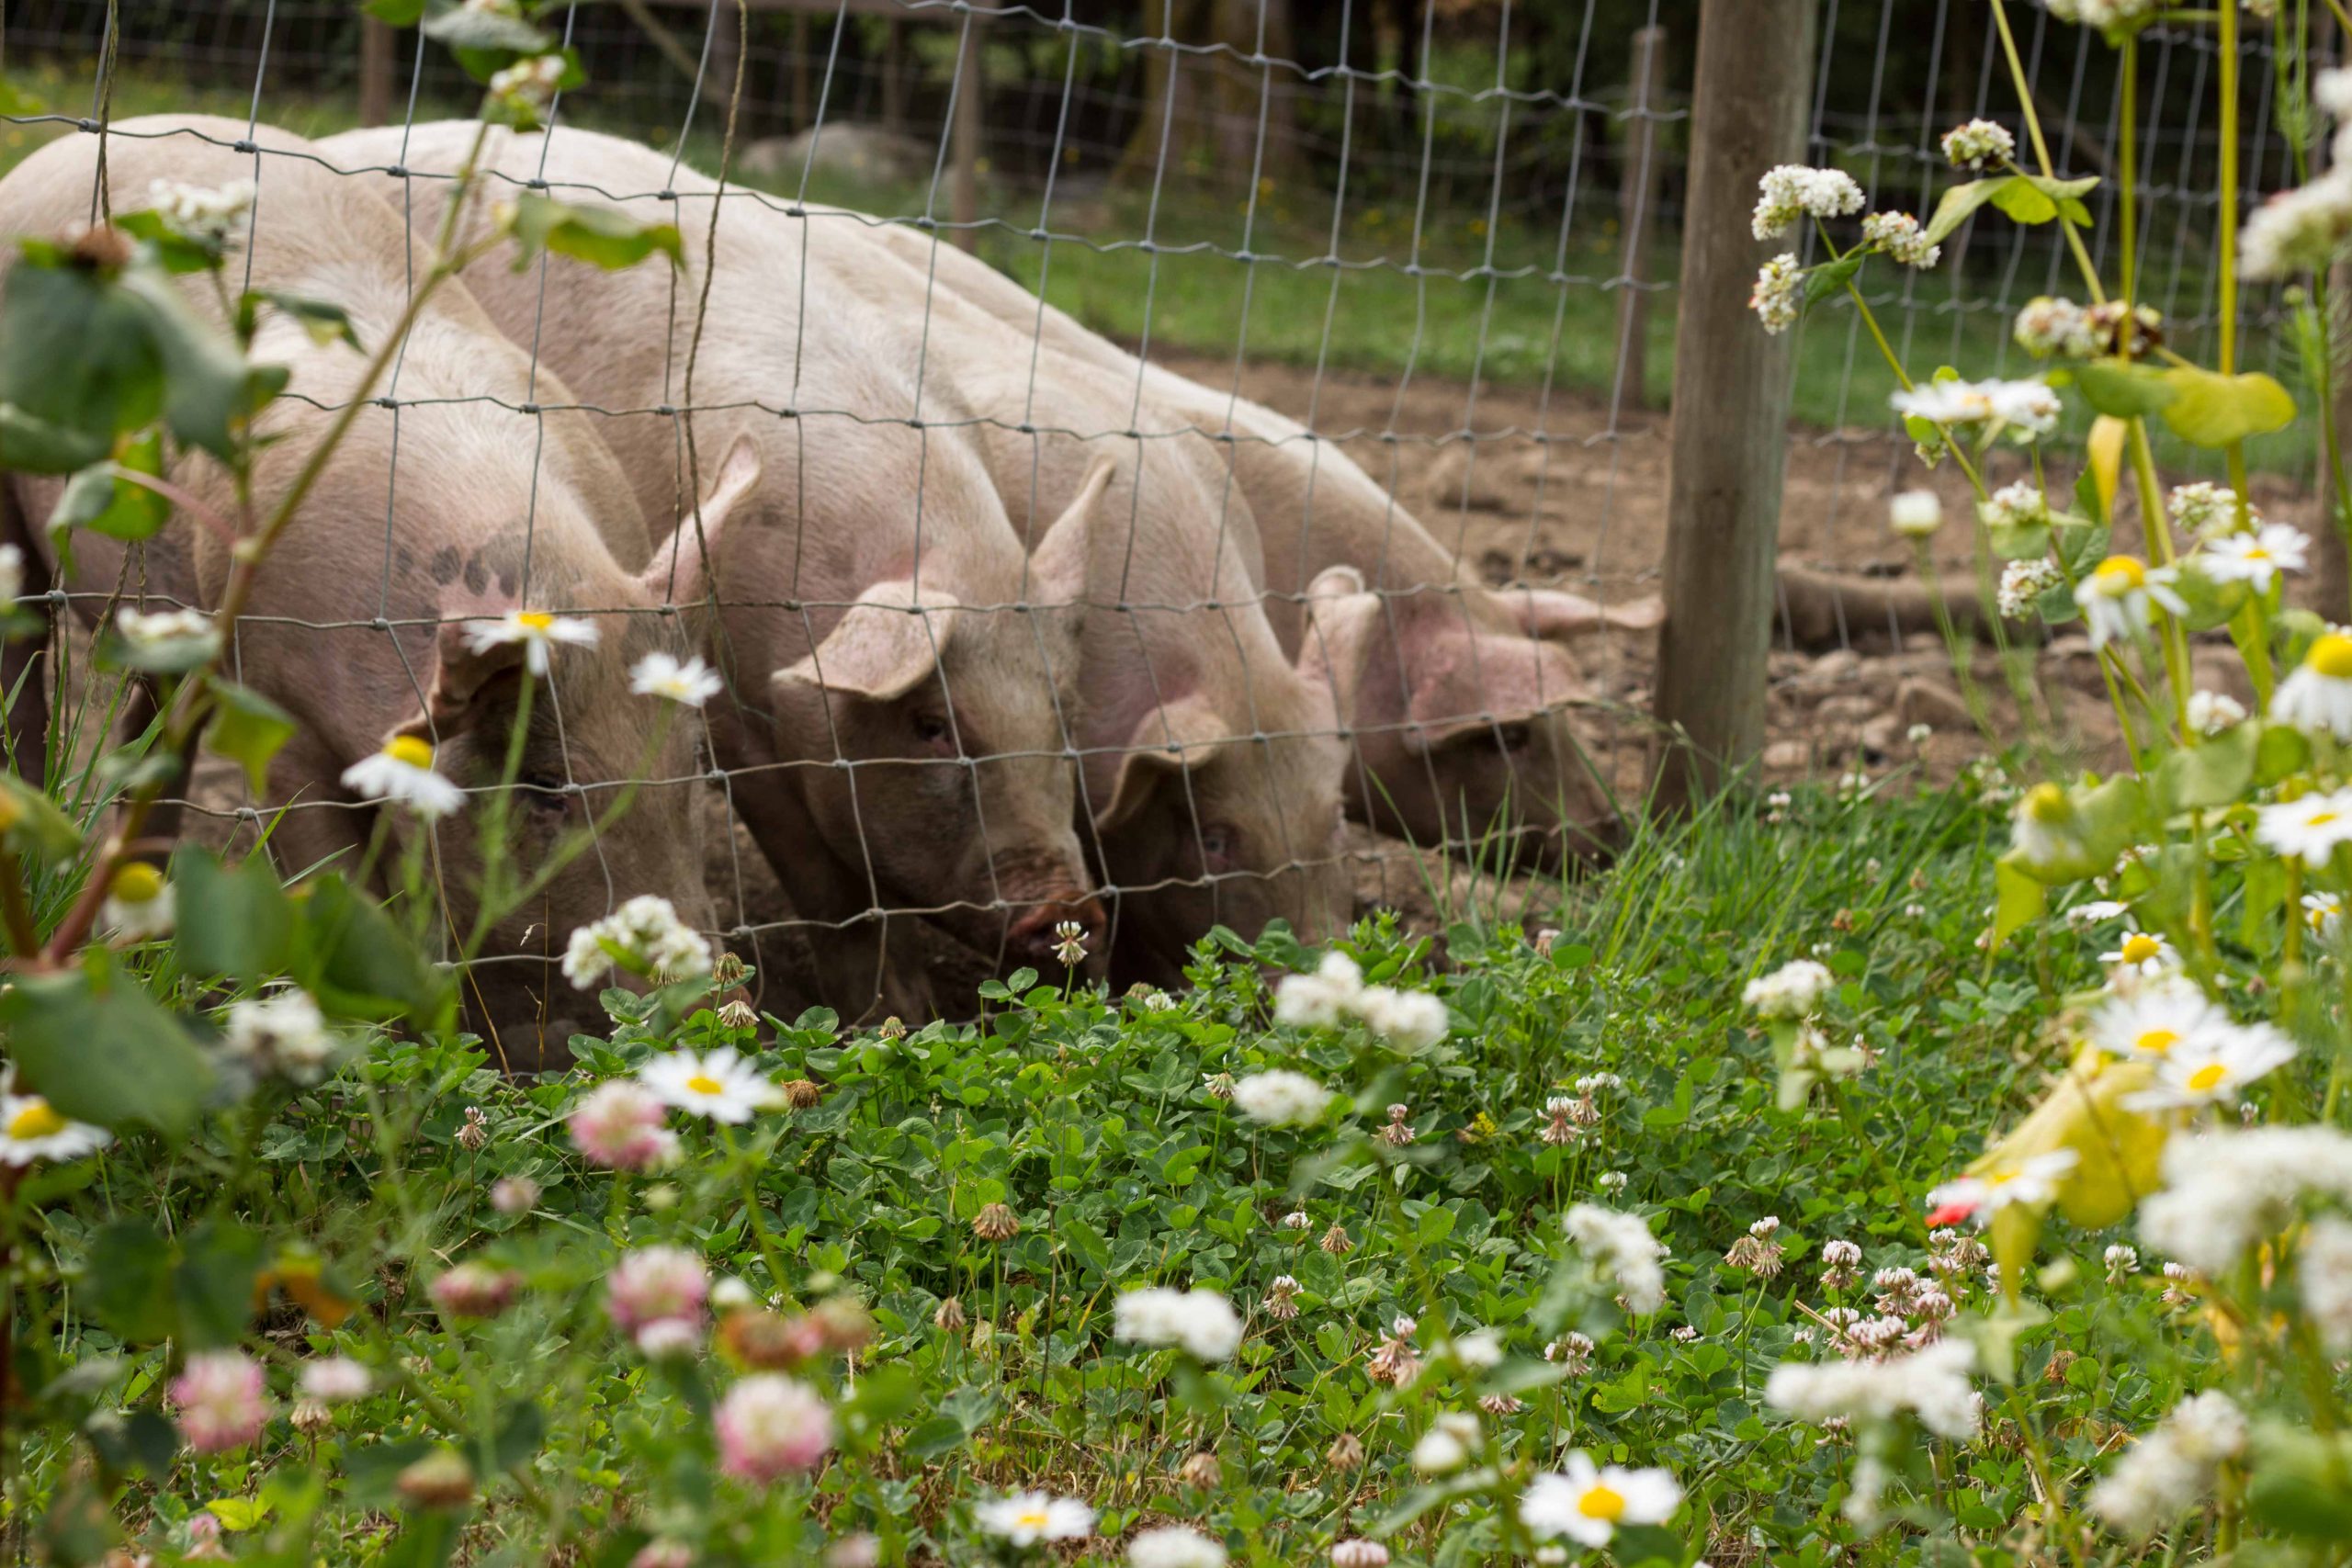 Farm Raised Pork